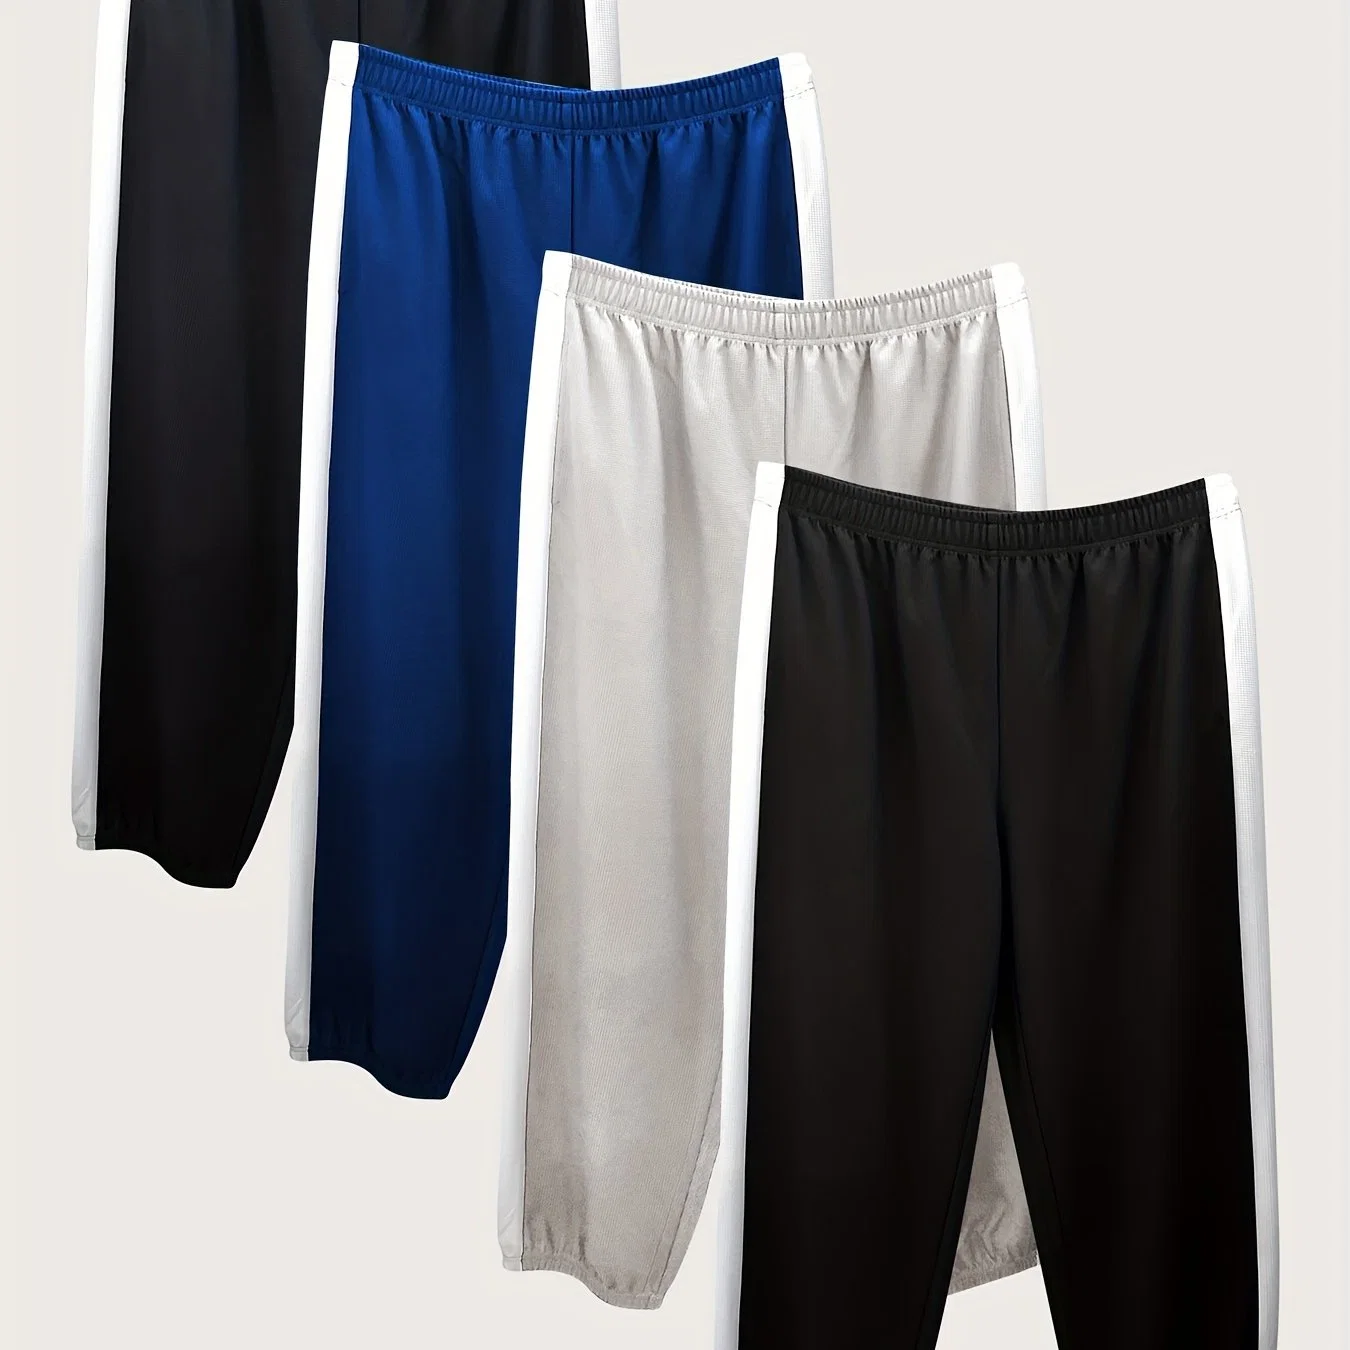 Lado das calças de padrão de waffle de 4 PC para homem, com venda a quente e maior dimensão Calças PANEL Pclaúsula Sports Pants Sweat para homem tamanhos grandes